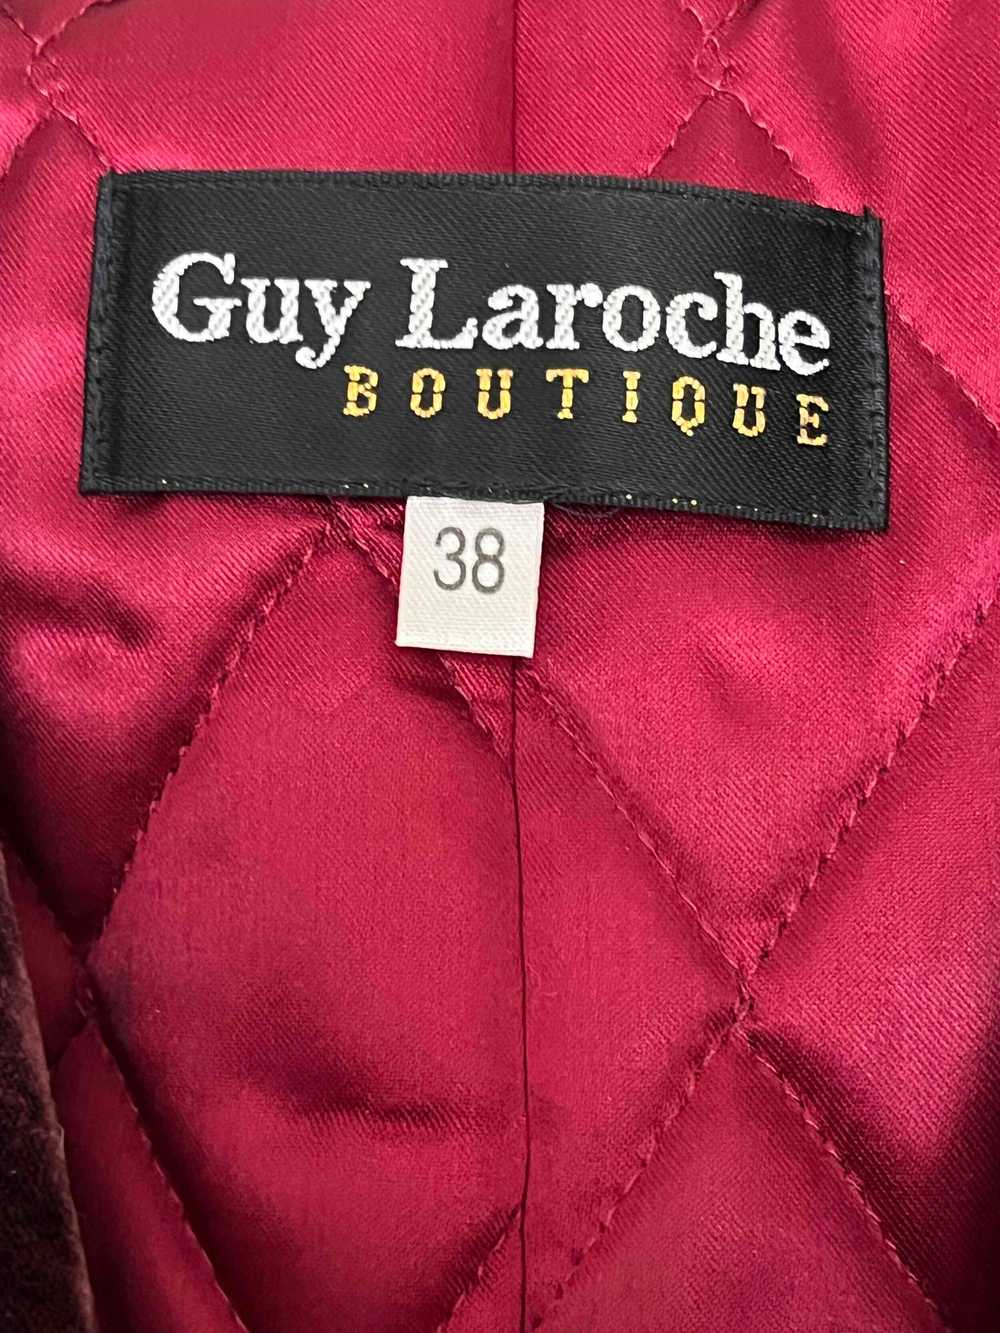 Guy Laroche velvet jacket - image 5